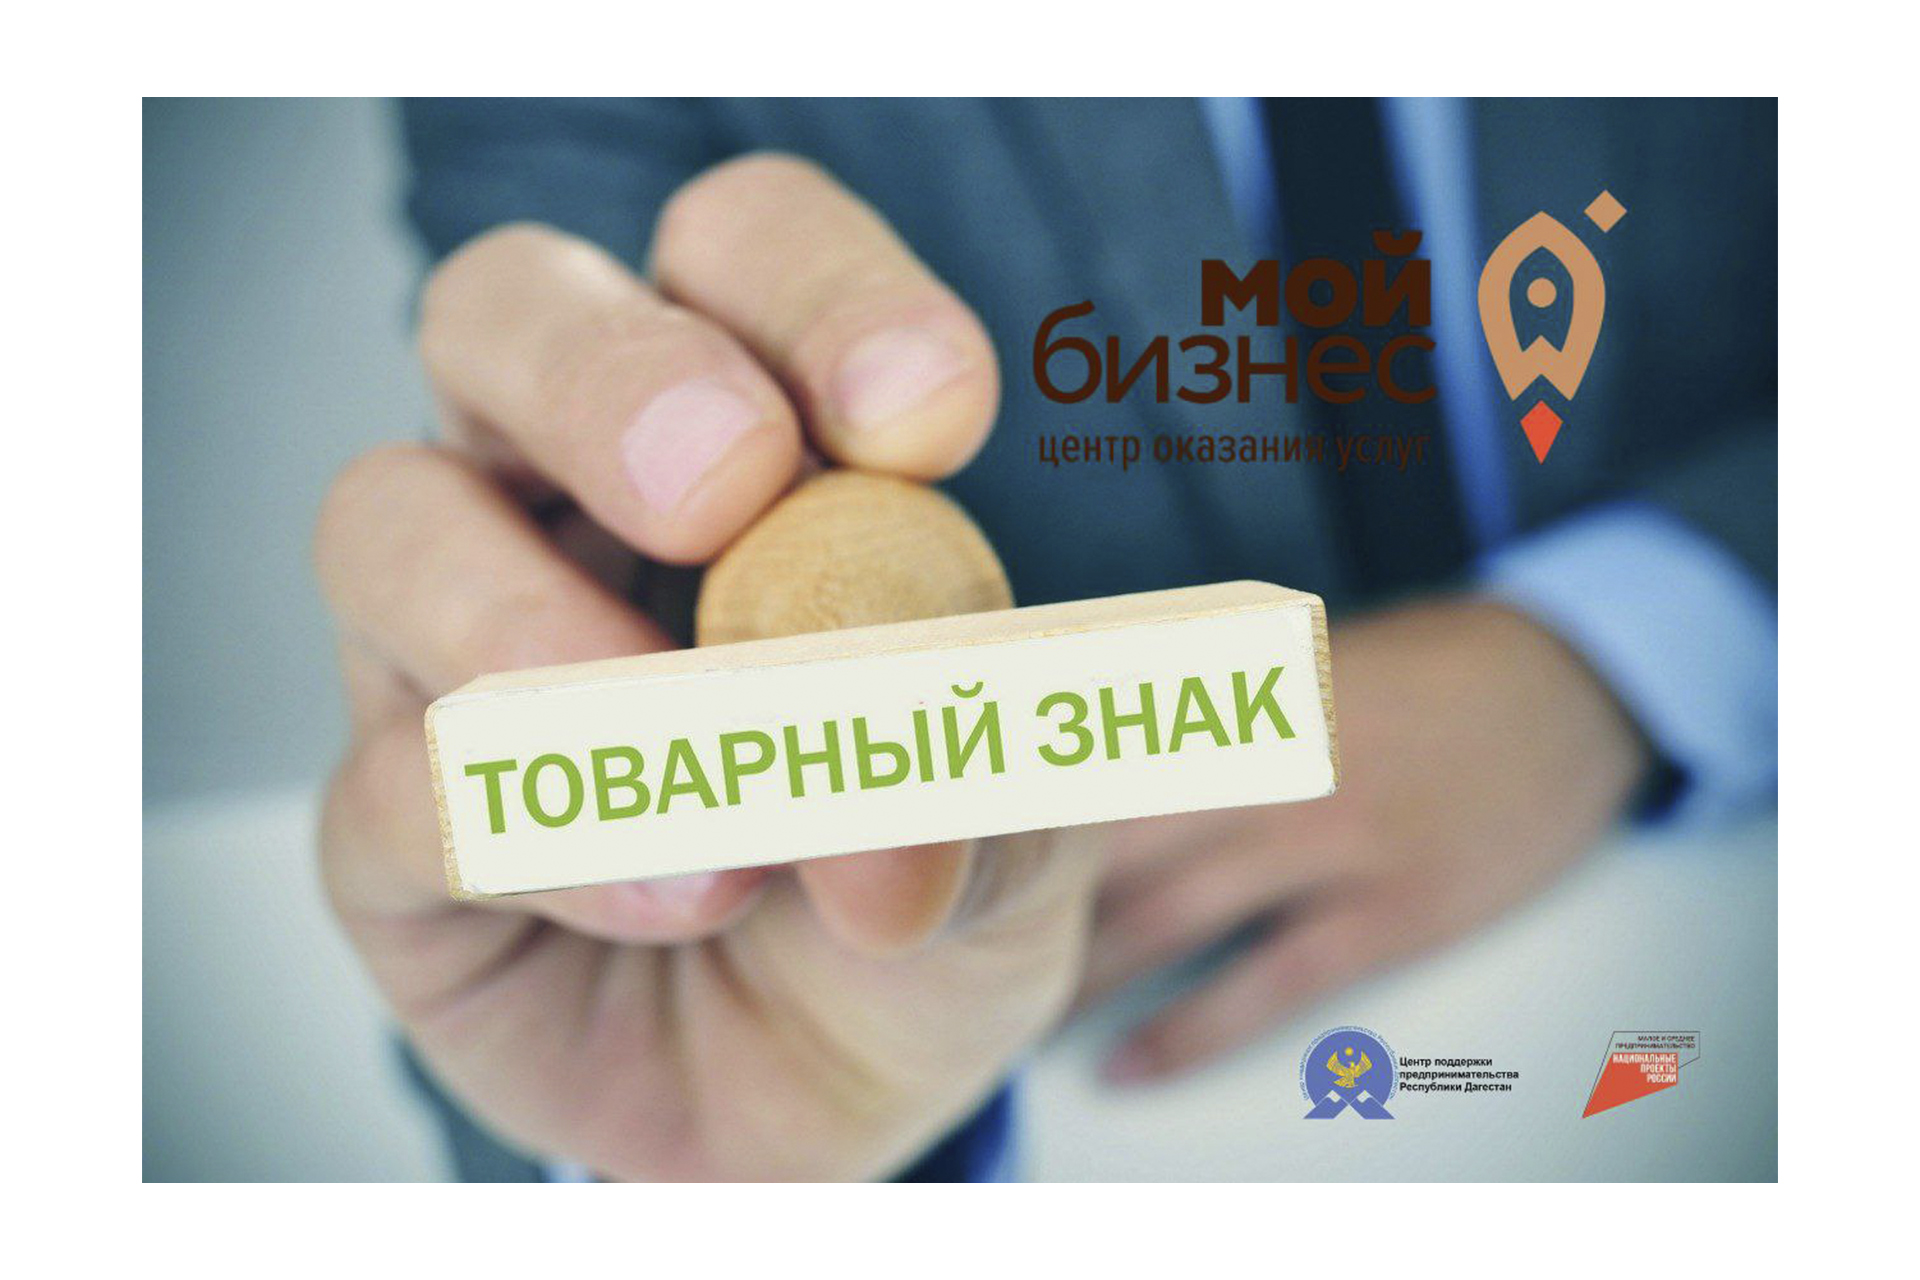 Центр «Мой бизнес» запускает услугу по содействию в регистрации товарного знака для МСП, зарегистрированных на территории Республики Дагестана